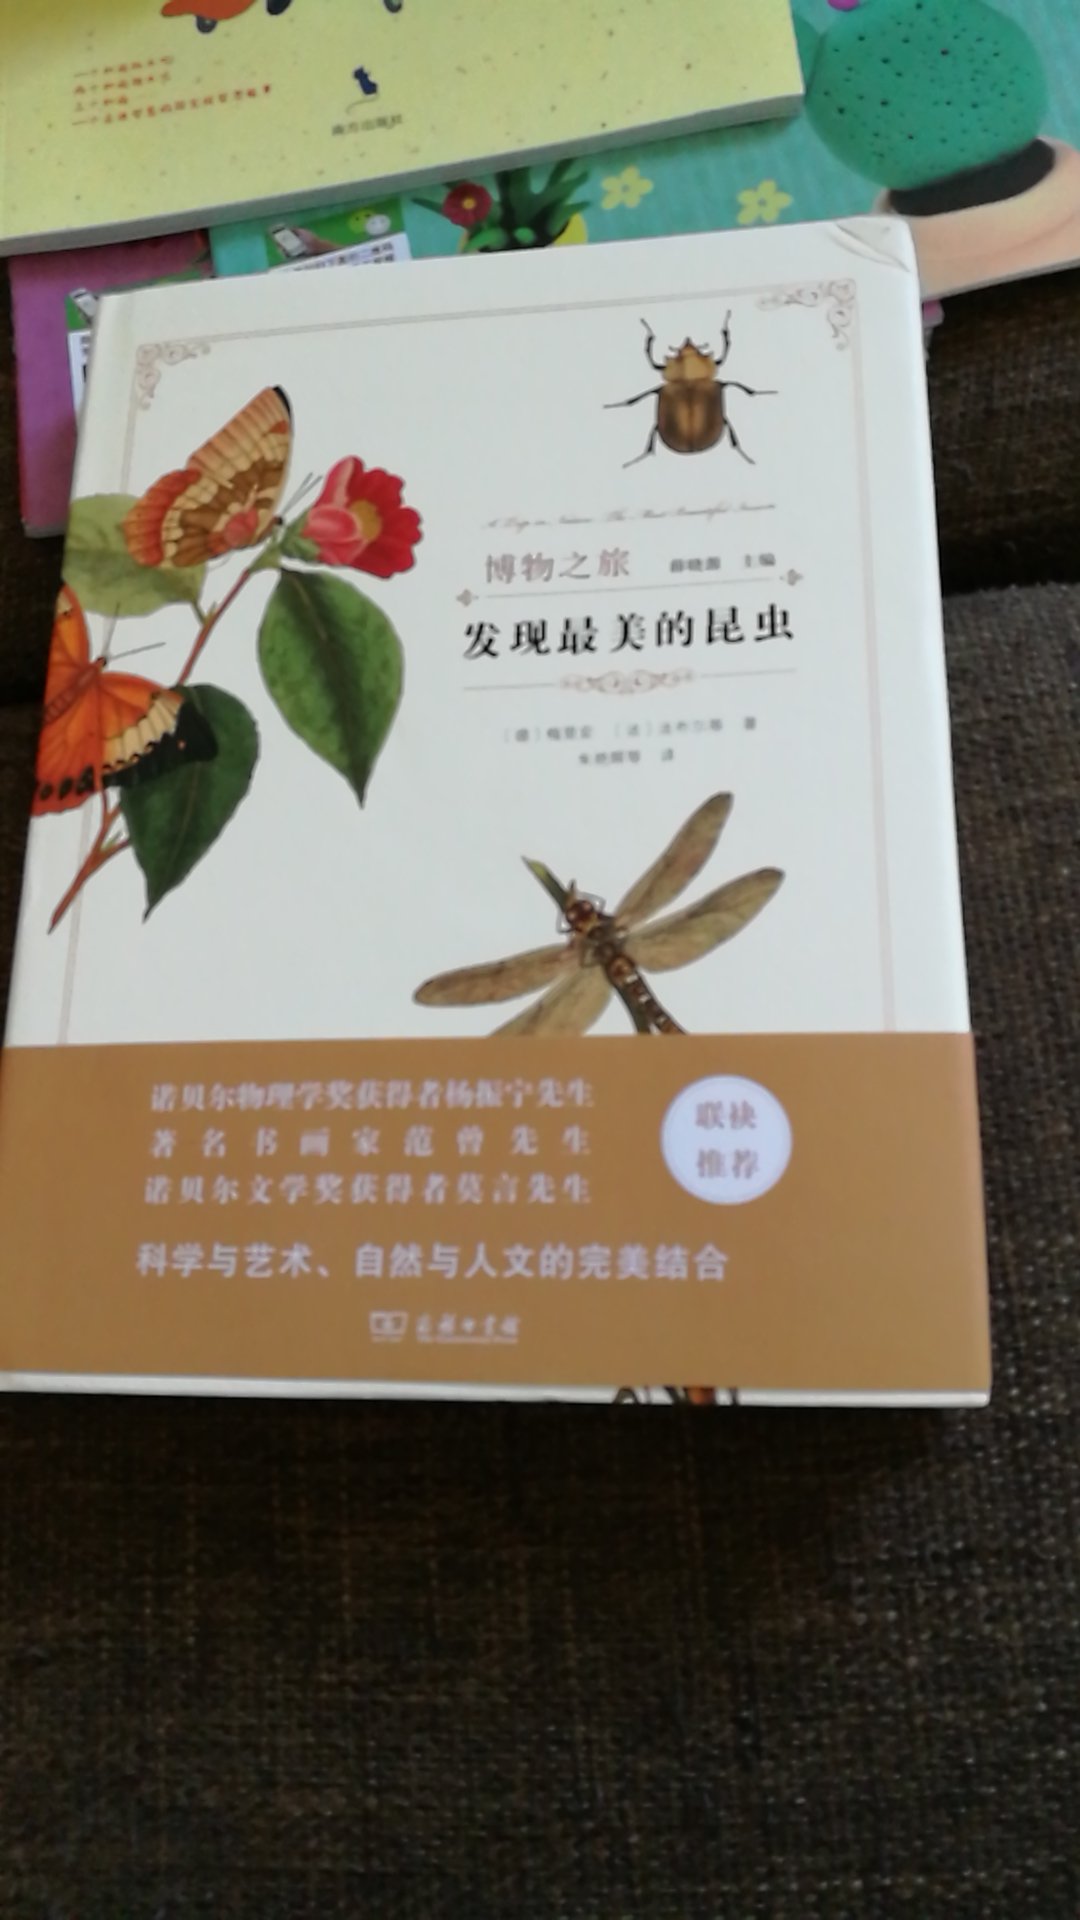 昆虫的书家里有好多，名作大多是外国人写的，其实不实用。